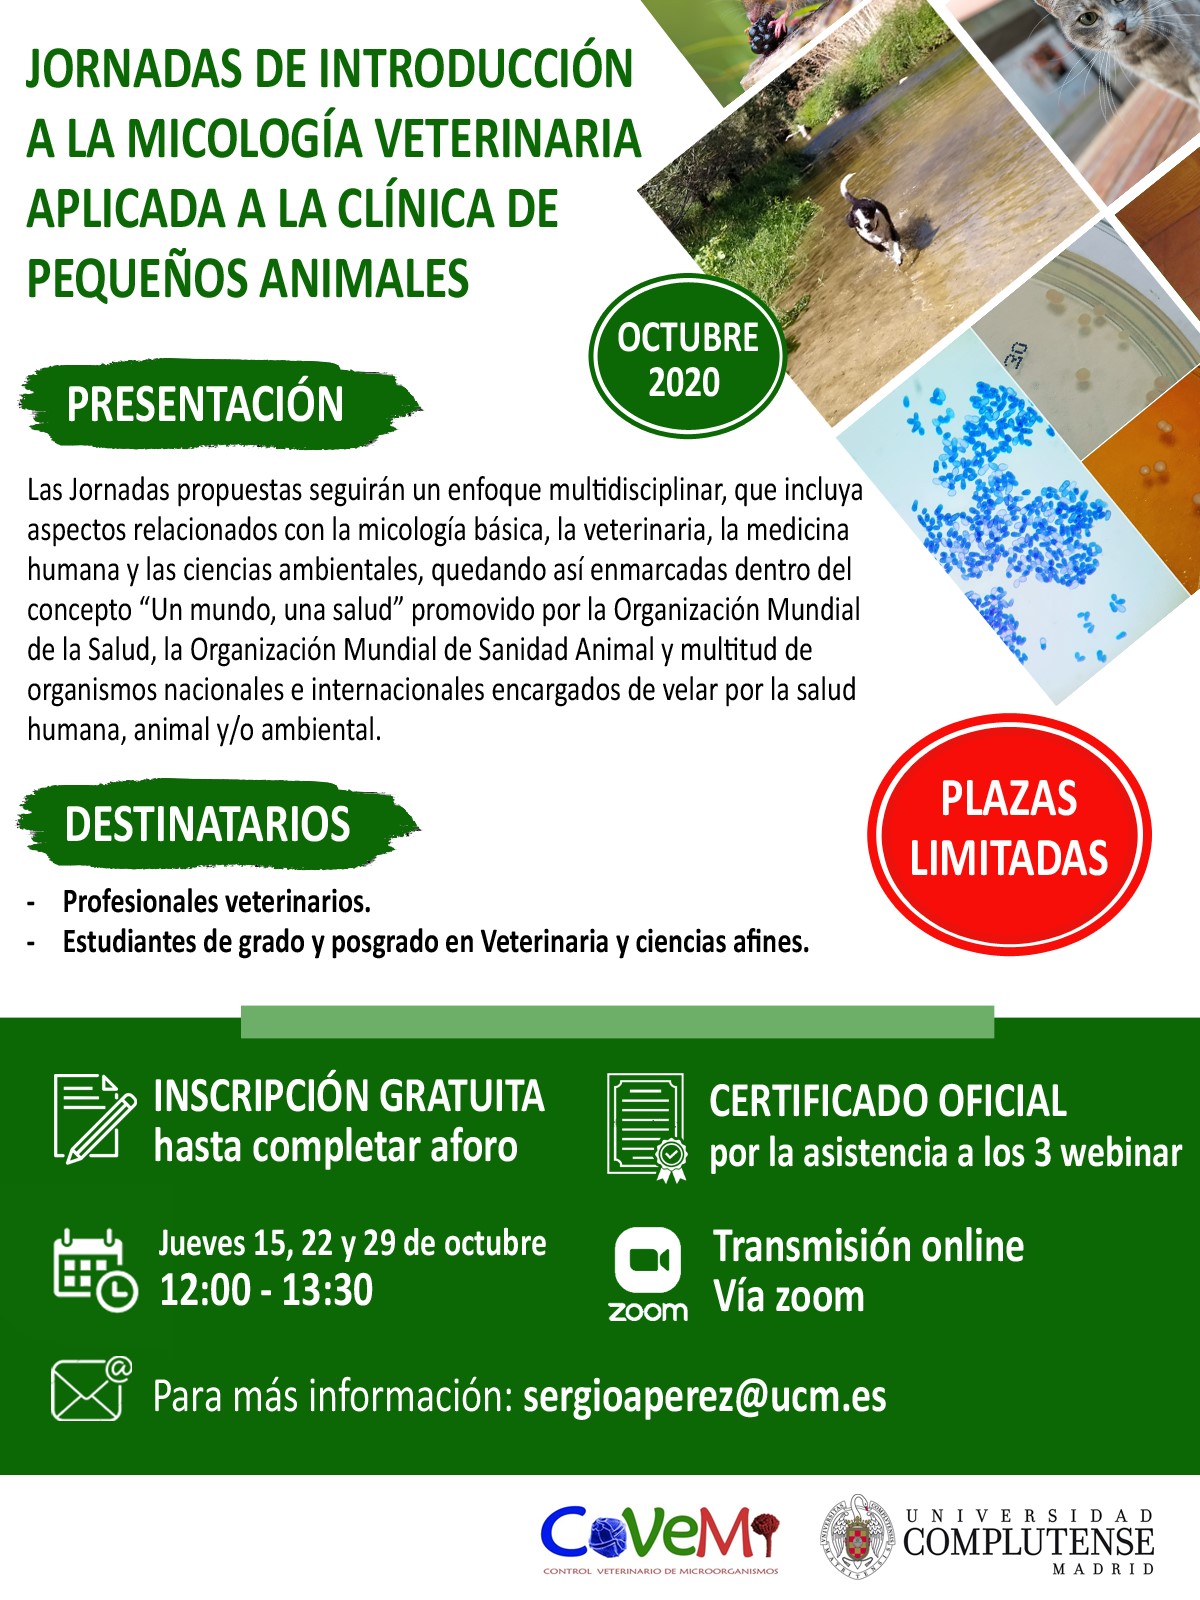 Jornadas de Introducción a la Micología Veterinaria Aplicada a la Clínica de Pequeños Animales